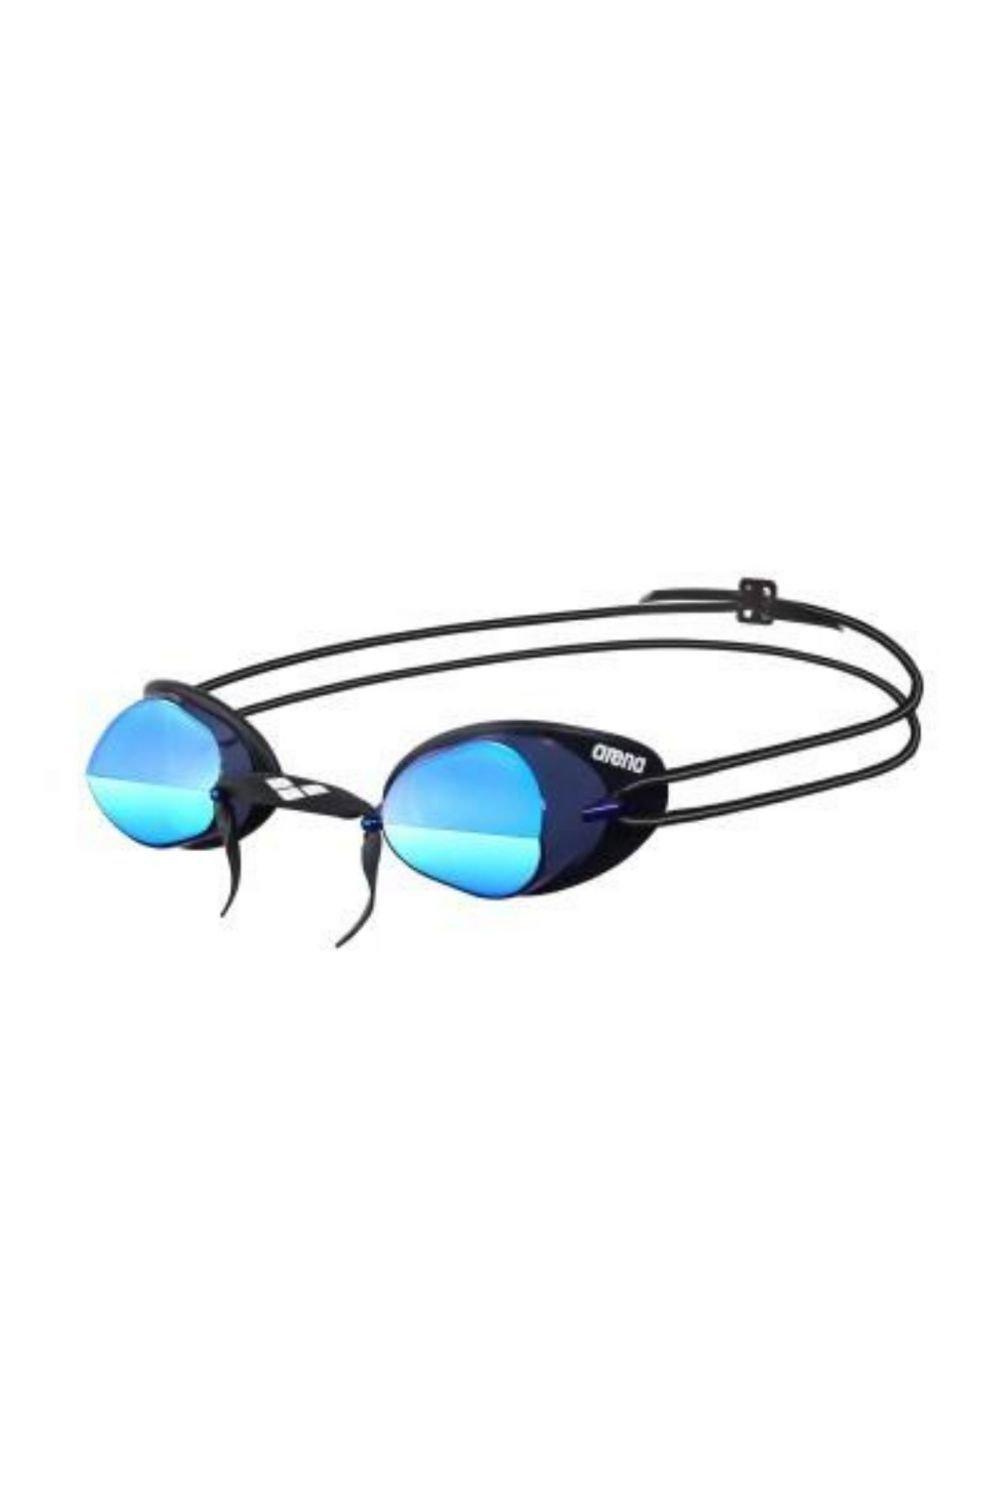 Очки для плавания Swedix Mirror - Зеркальные линзы Arena, синий очки для плавания arena swedix black blue